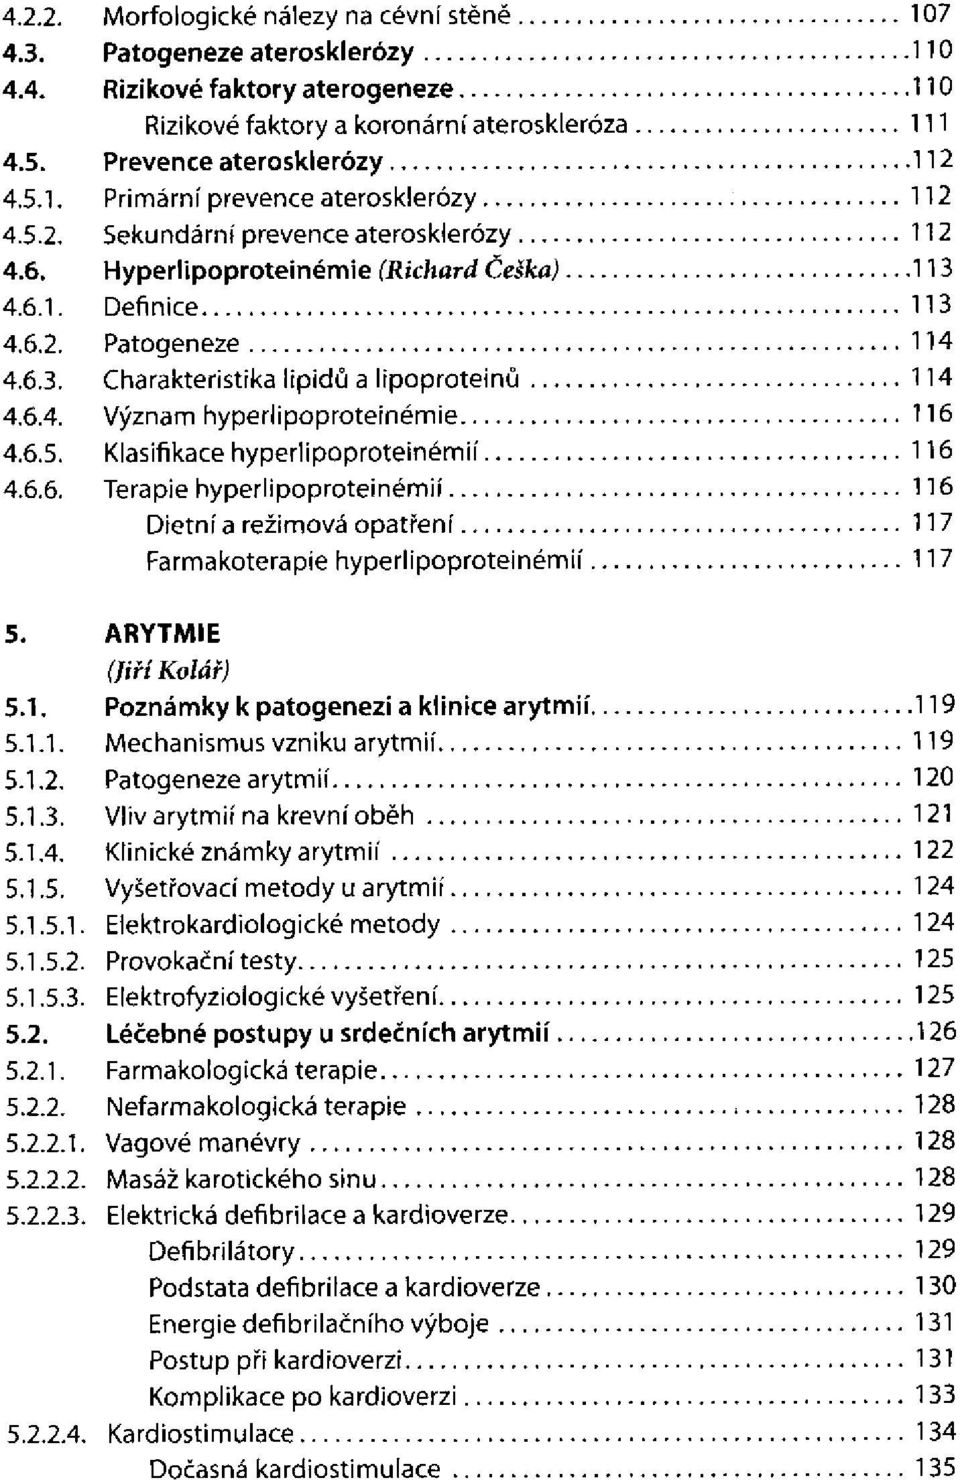 Dietní a režimová opatření Farmakoterapie hyperlipoproteinémií ARYTMIE (Jiří Kolář) Poznámky k patogenezi a klinice arytmií Patogeneze arytmií Vliv arytmií na krevní oběh Klinické známky arytmií